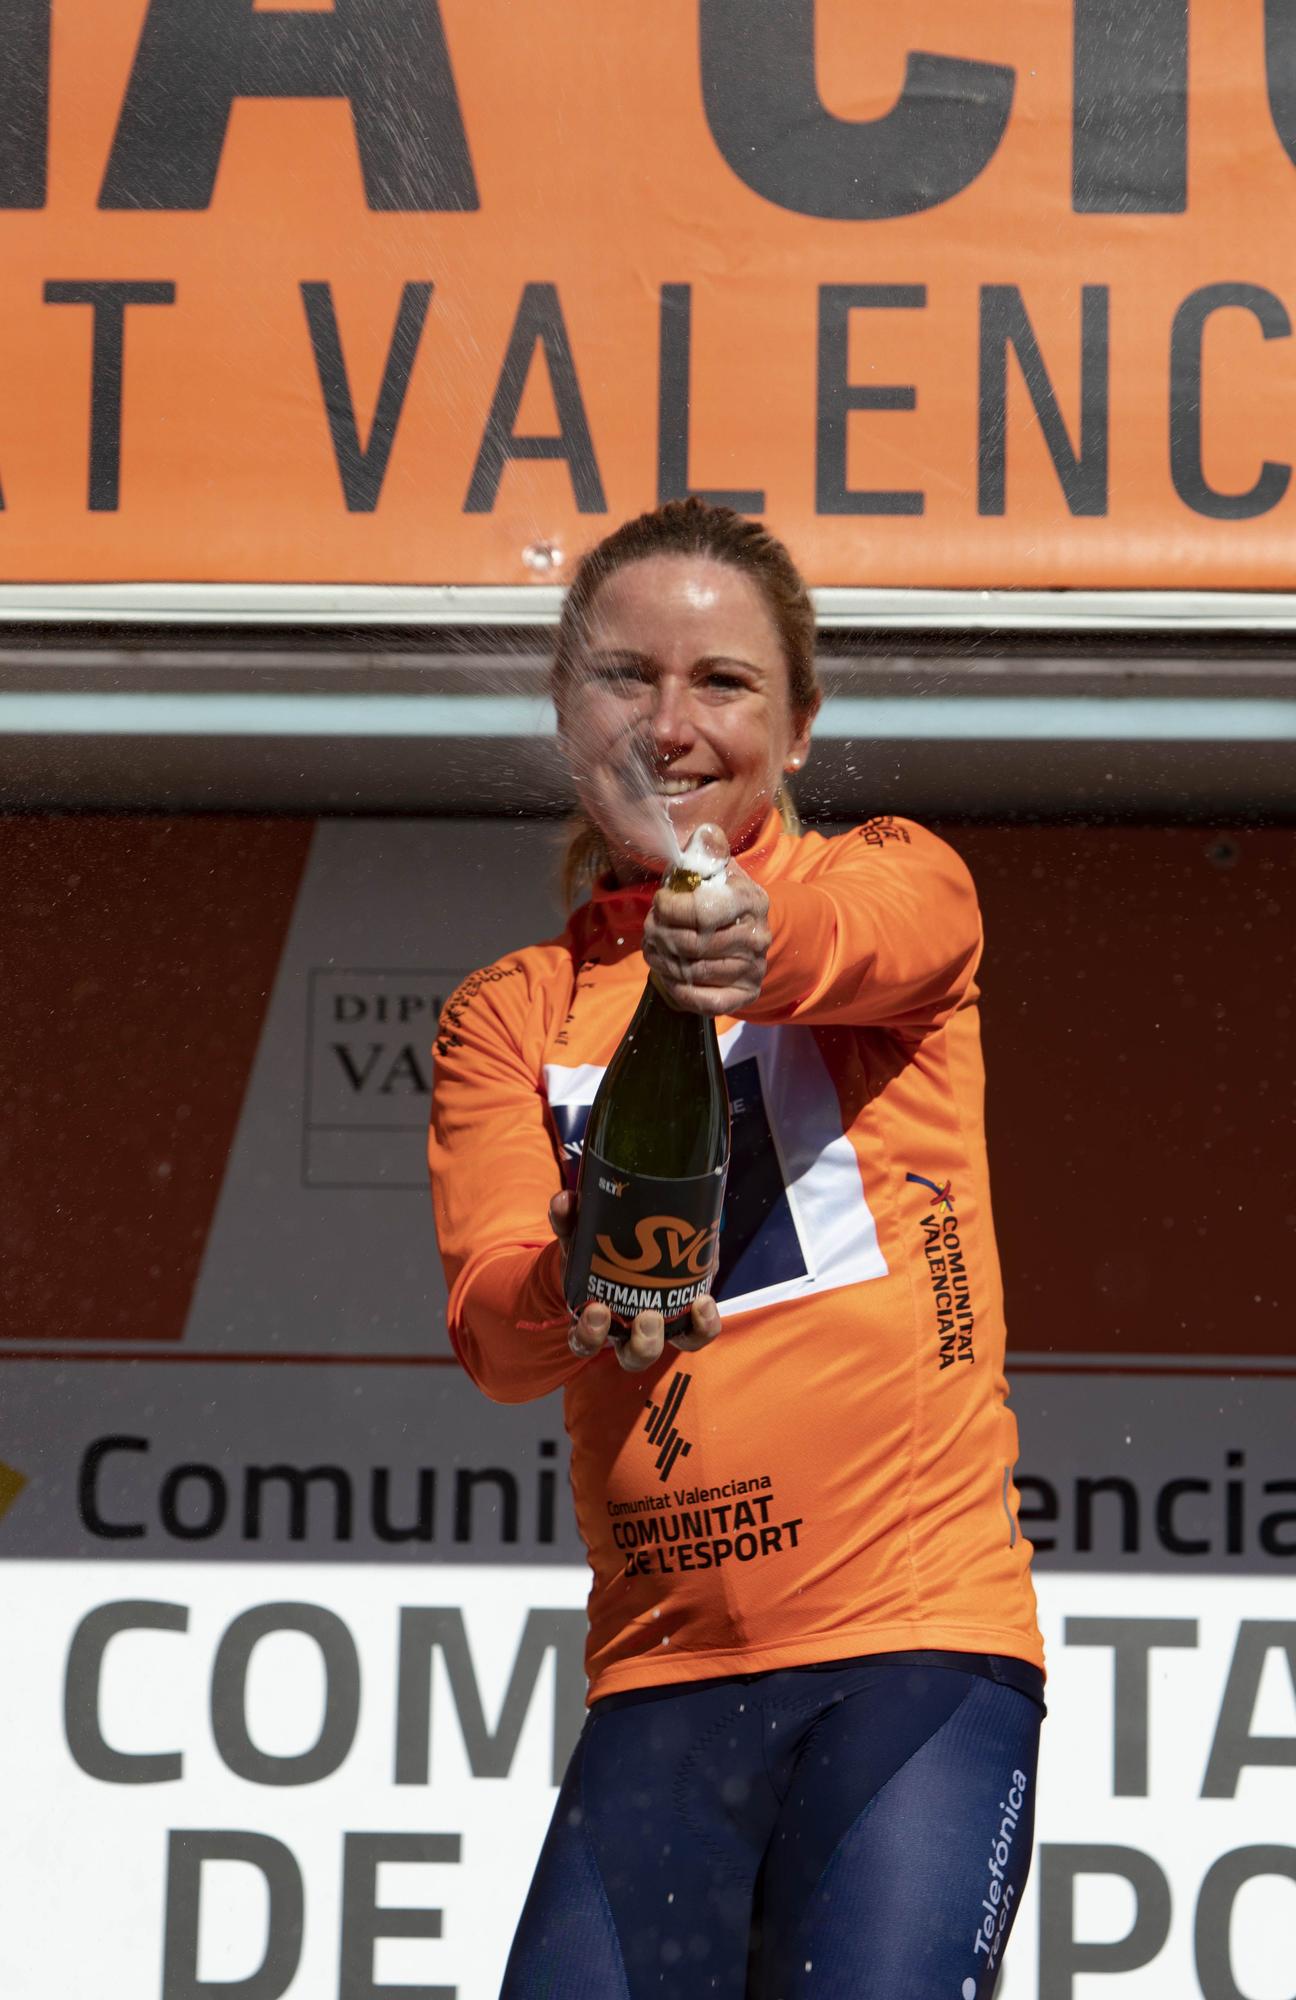 Última etapa de la Setmana Ciclista - Volta a la Comunitat Valenciana Fèmines